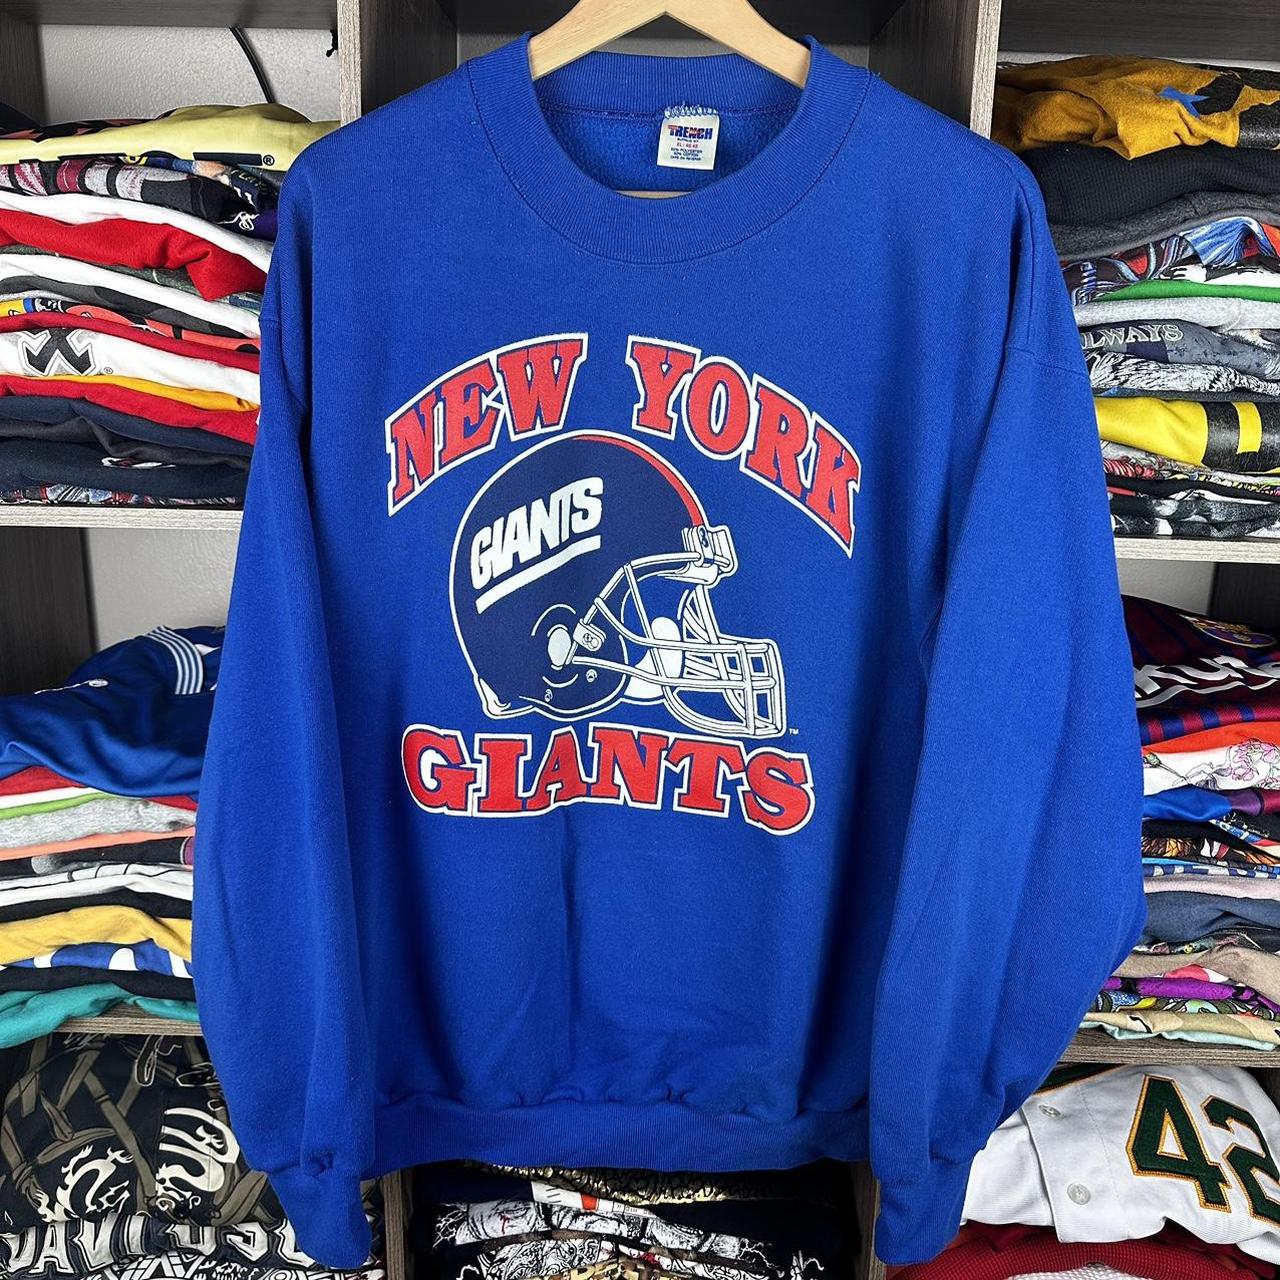 Vintage 90s New York Giants NFL SweatShirt Size:... - Depop